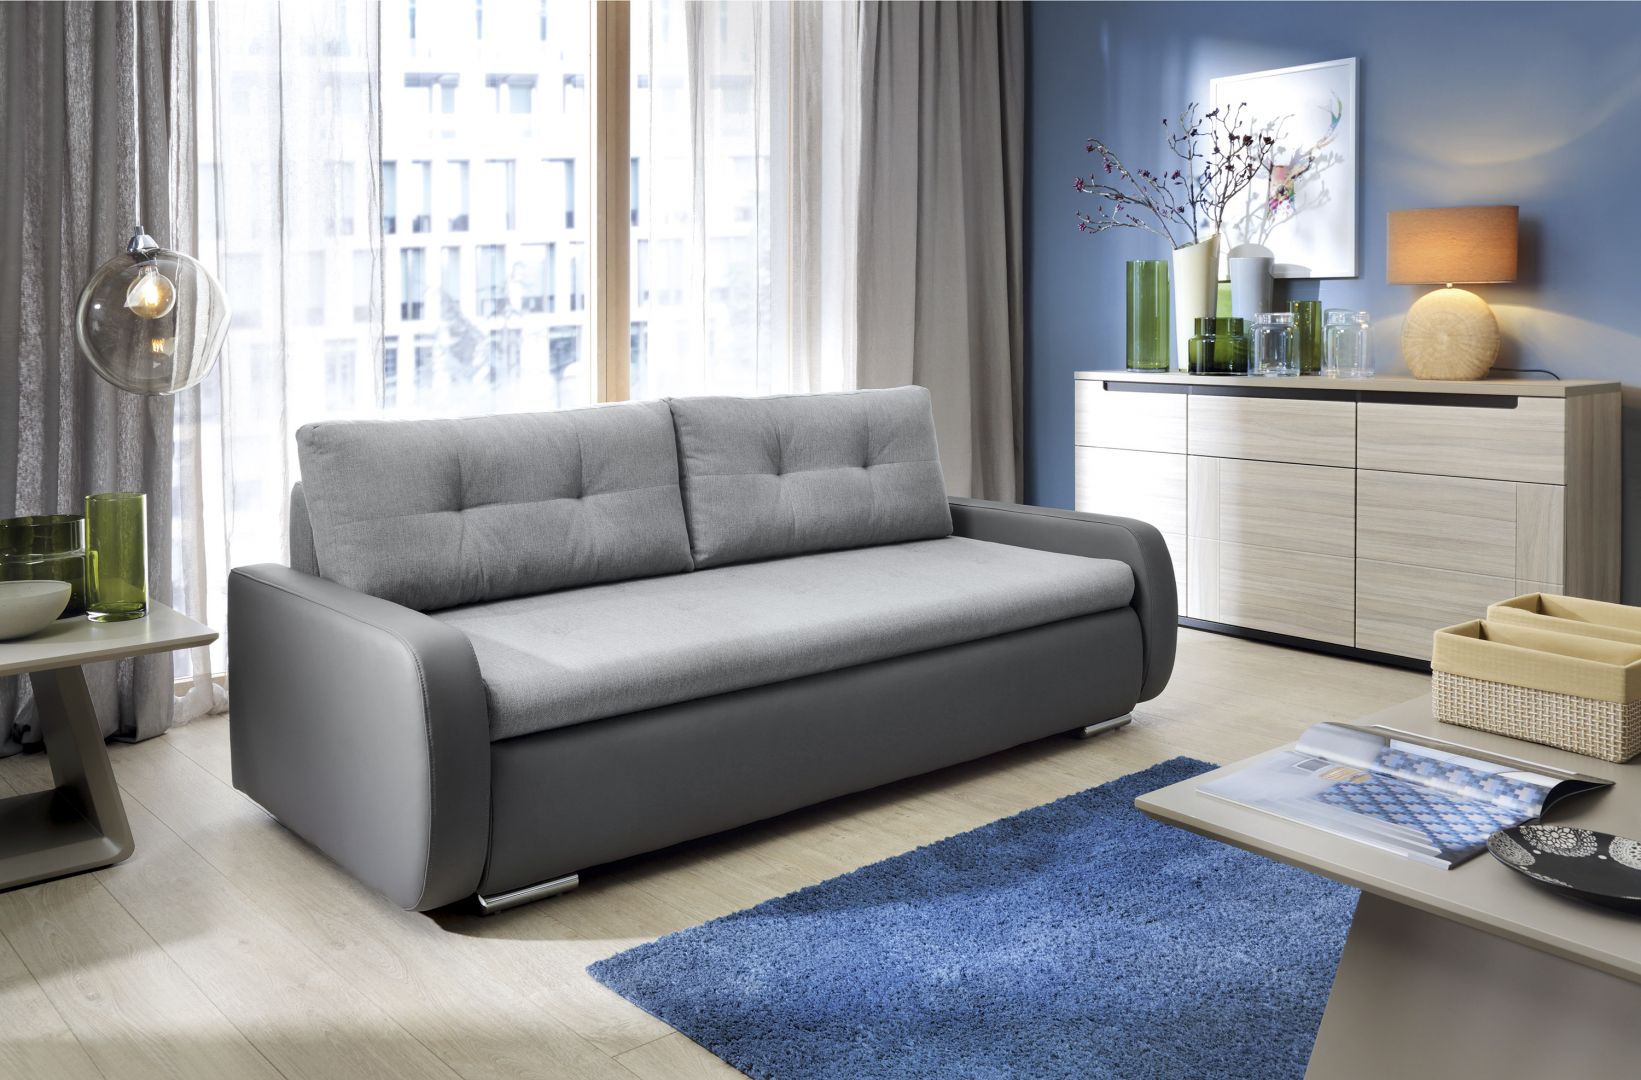 Sofa Pedro to rozwiązanie idealne do małego wnętrza. Fot. Salony Agata